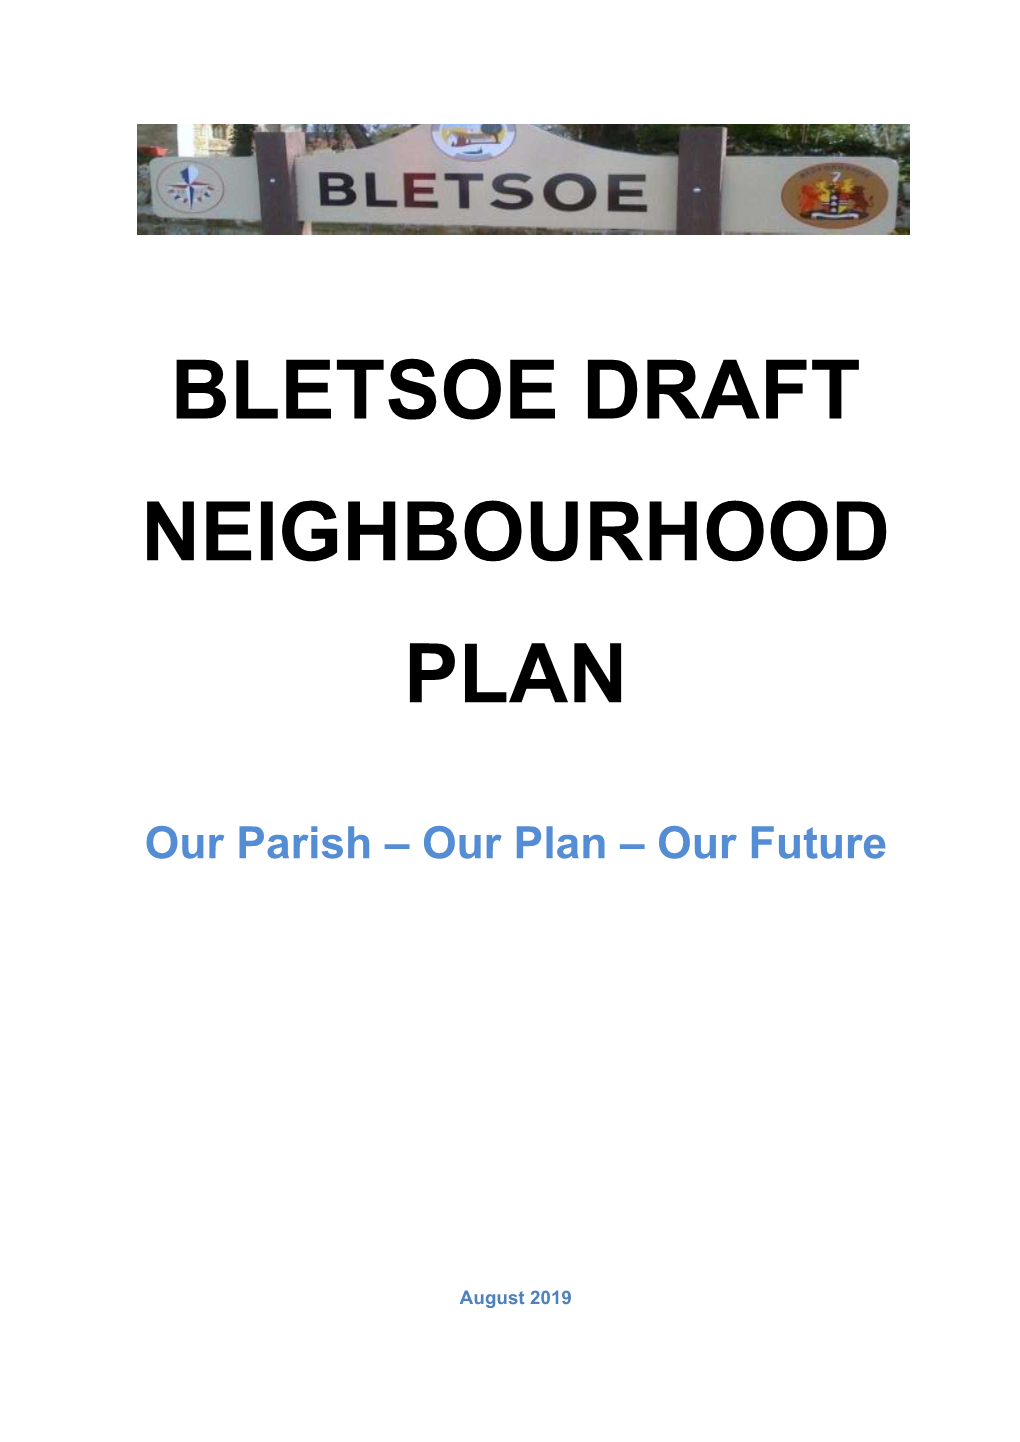 Bletsoe Neighbourhood Development Plan